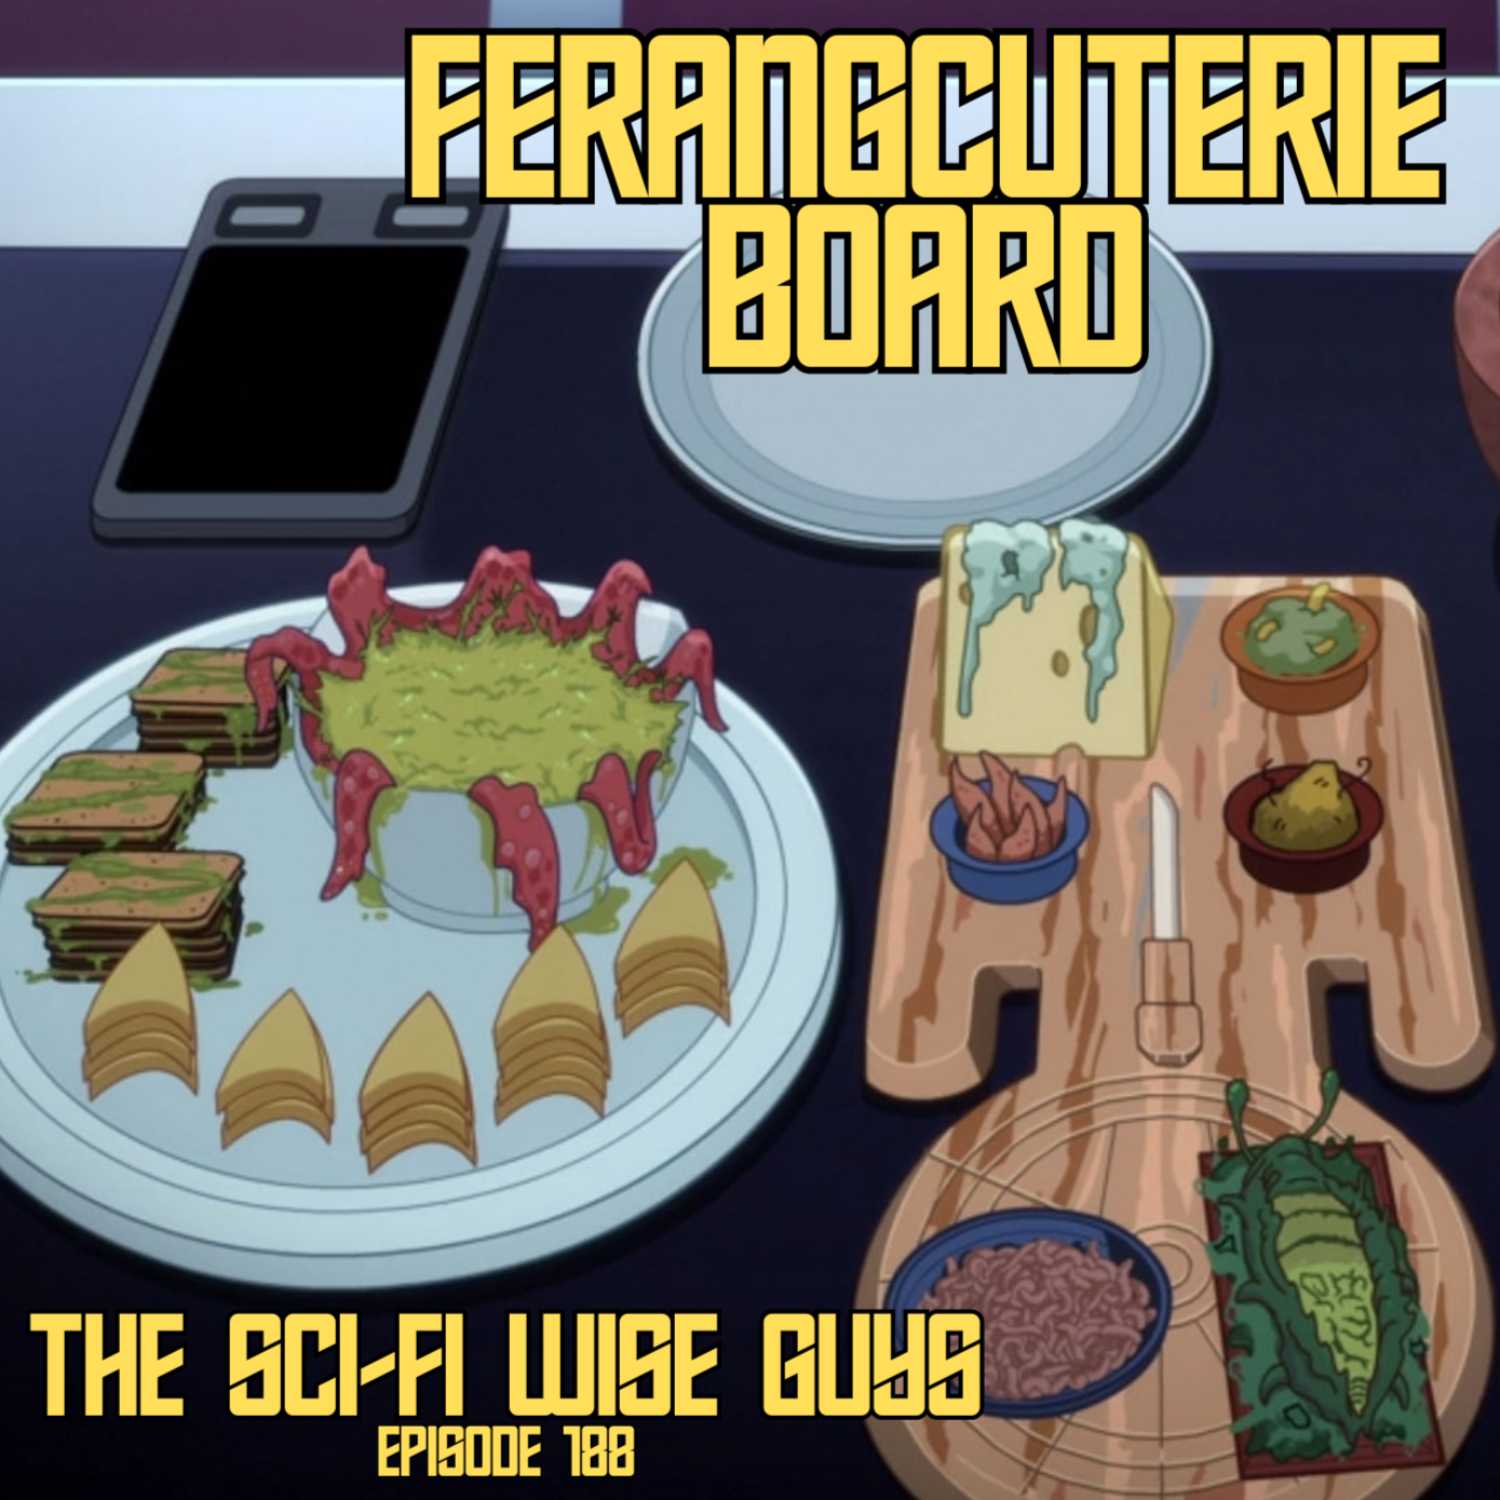 Ferangcuterie Board (Star Trek: Lower Decks Season 4 Episode 6)